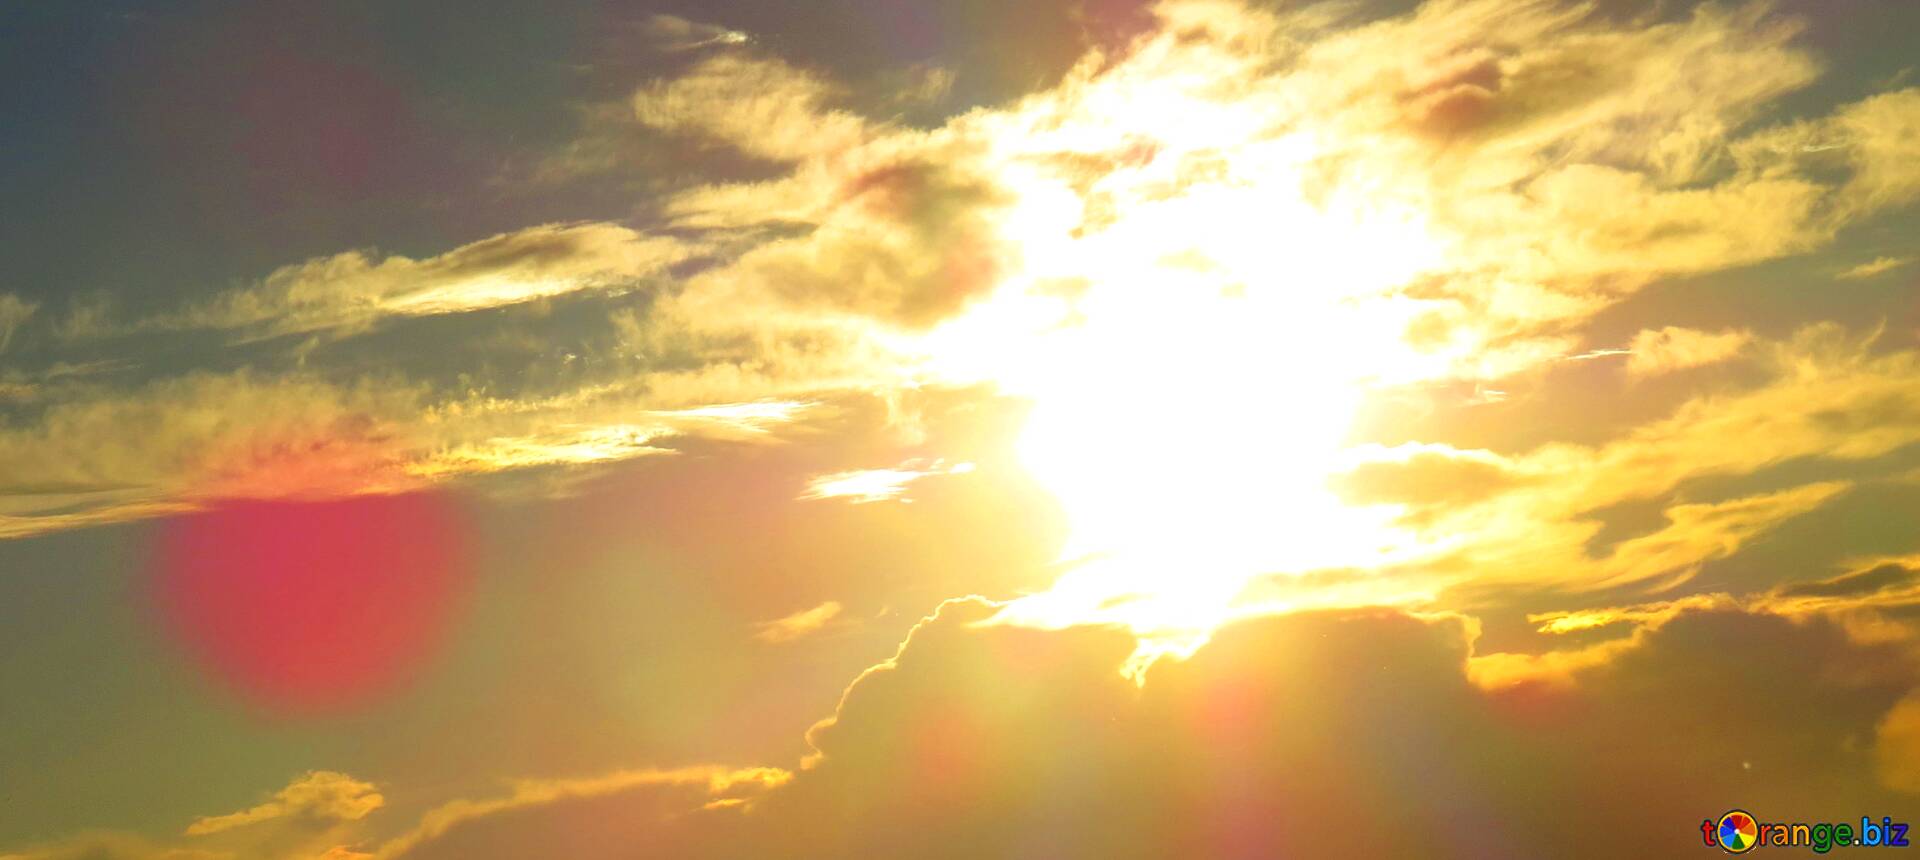  Sonnenuntergang Hintergrundbild 1920x860. Download Free Picture Abdeckung. Sonnenuntergang Hintergrundbilder Für Desktop. On CC BY License Free Image Stock TOrange.biz Fx №61779